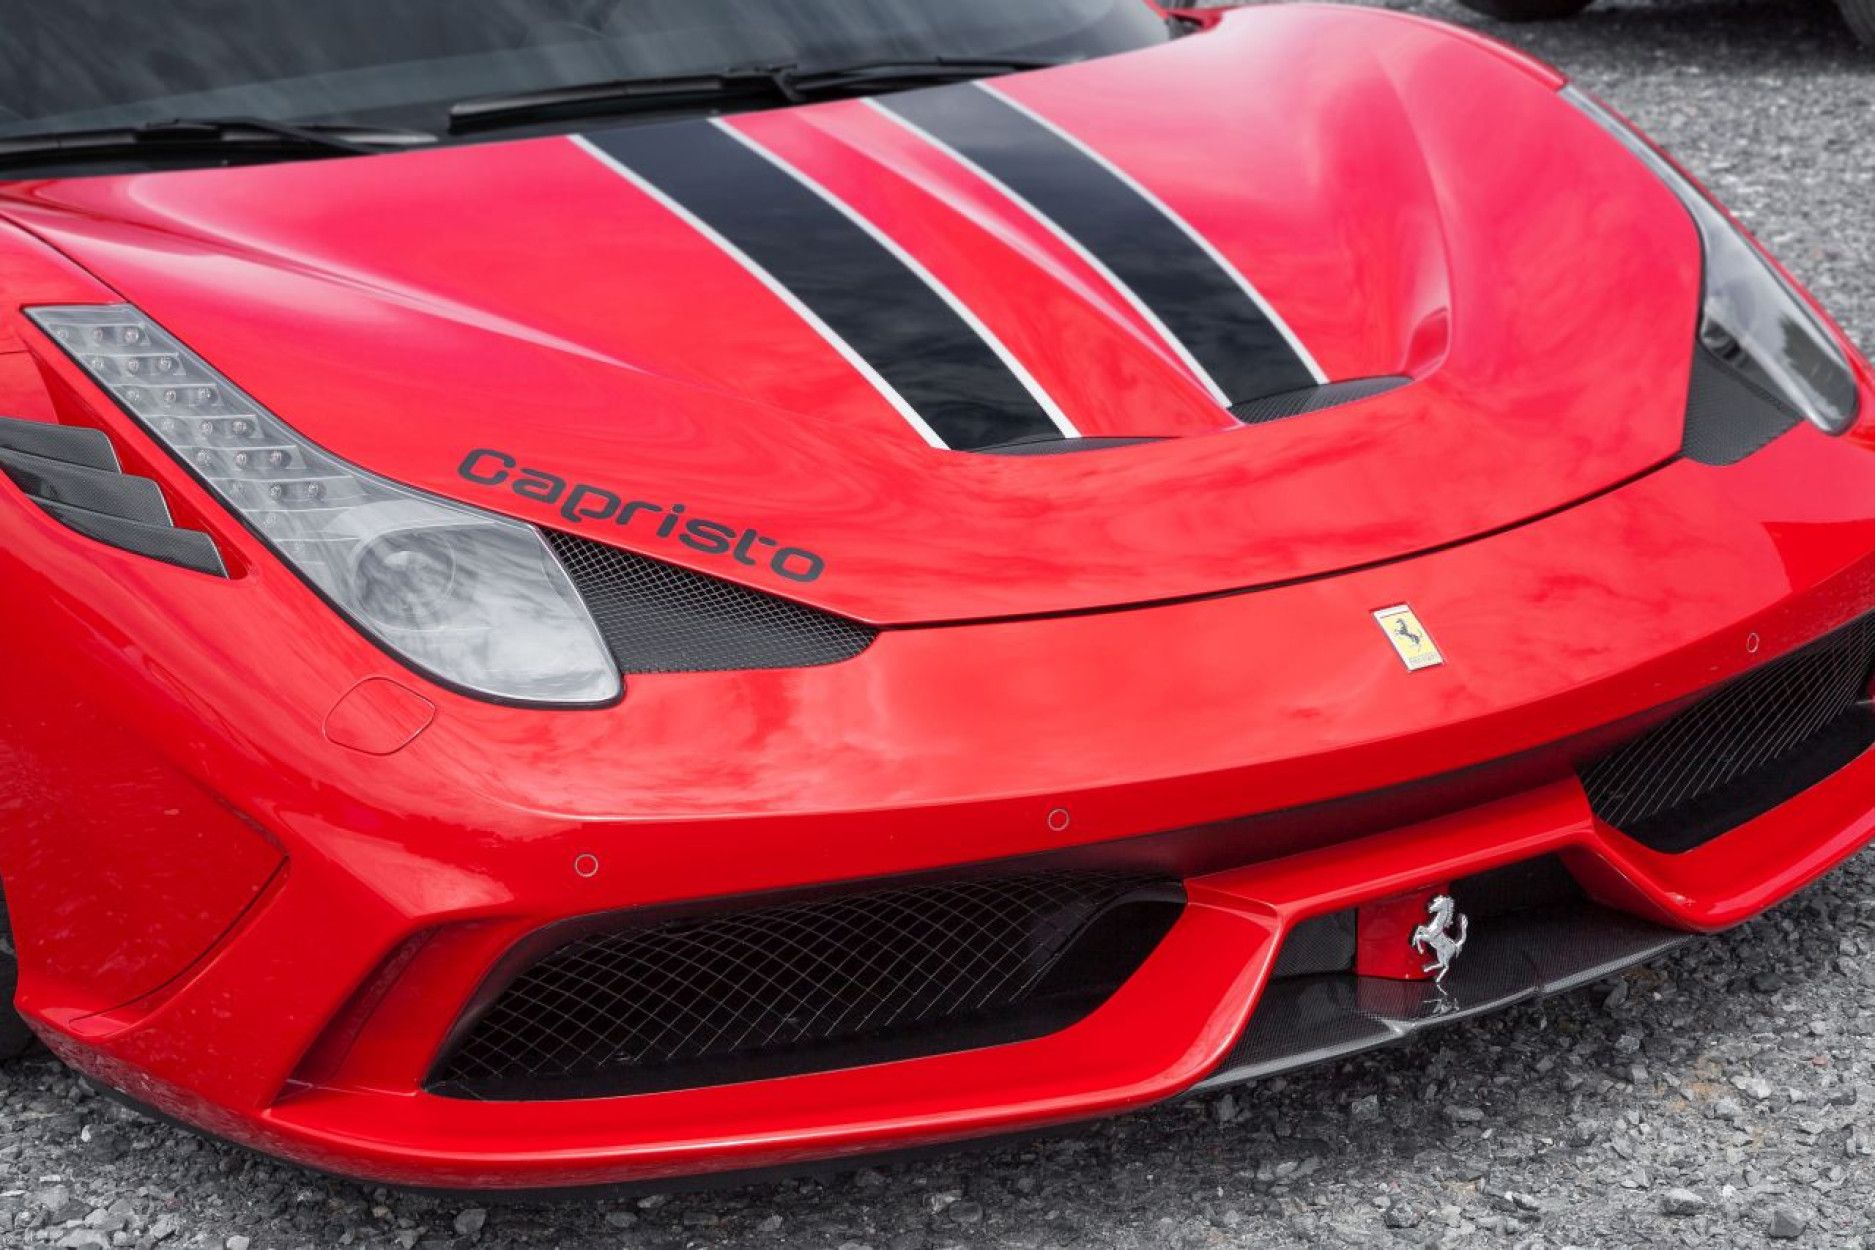 Capristo carbon front diffuser front lip for Ferrari 458 Speciale (2) 